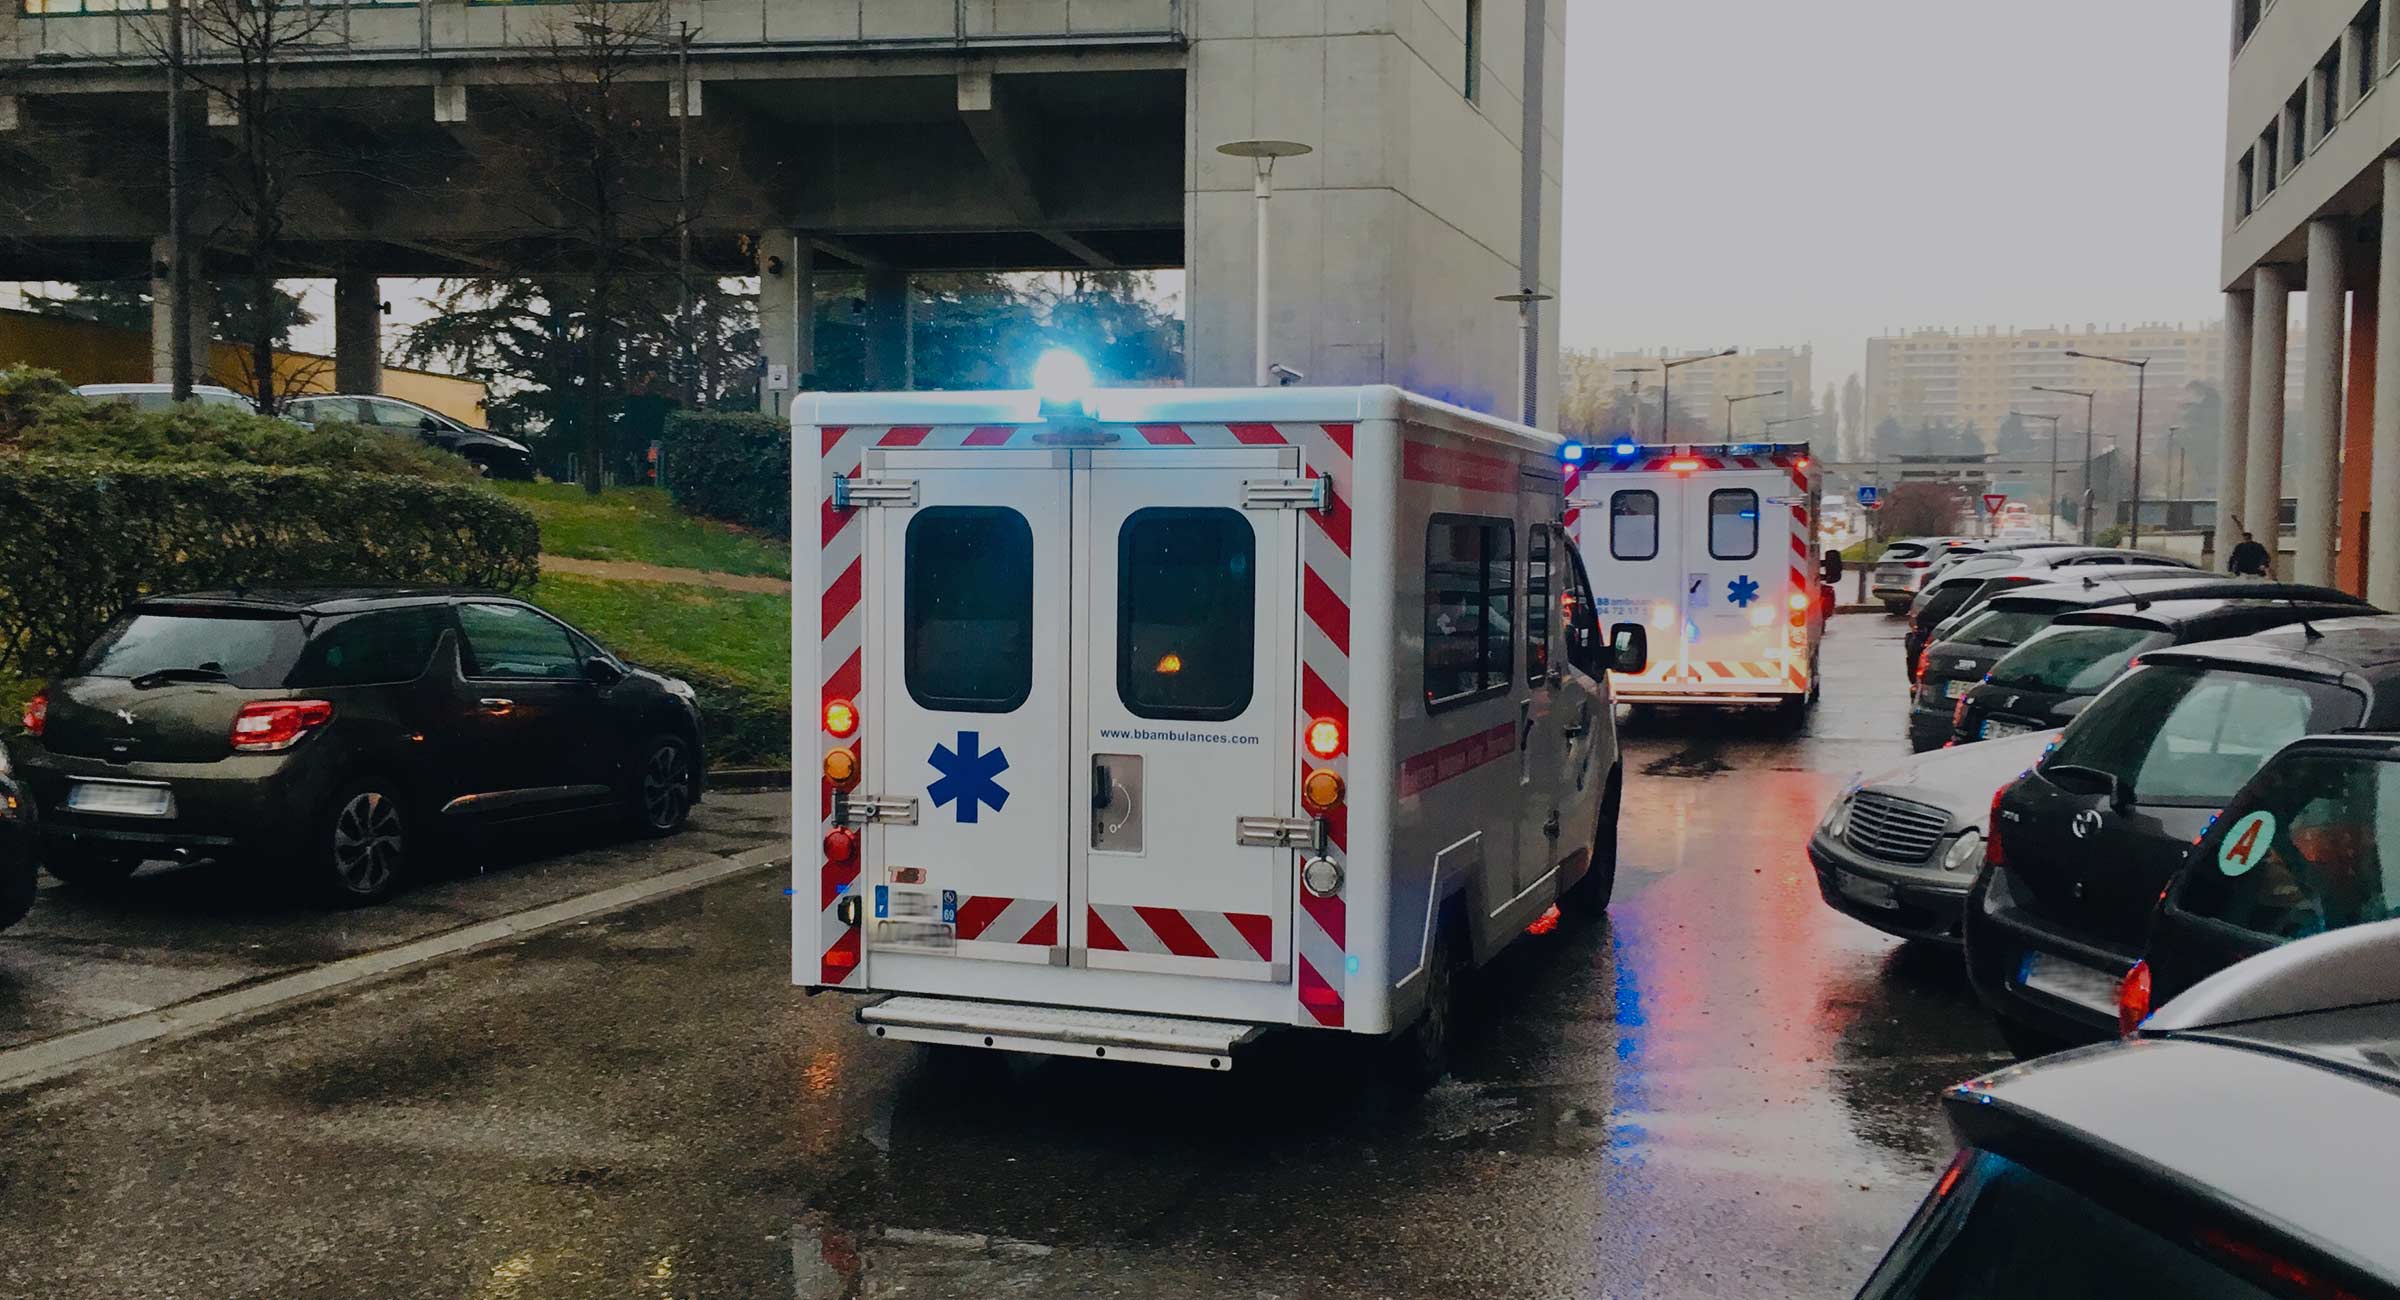 Transport sanitaire médicalisé, Dokever Ambulance Lyon, Rhône-Alpes